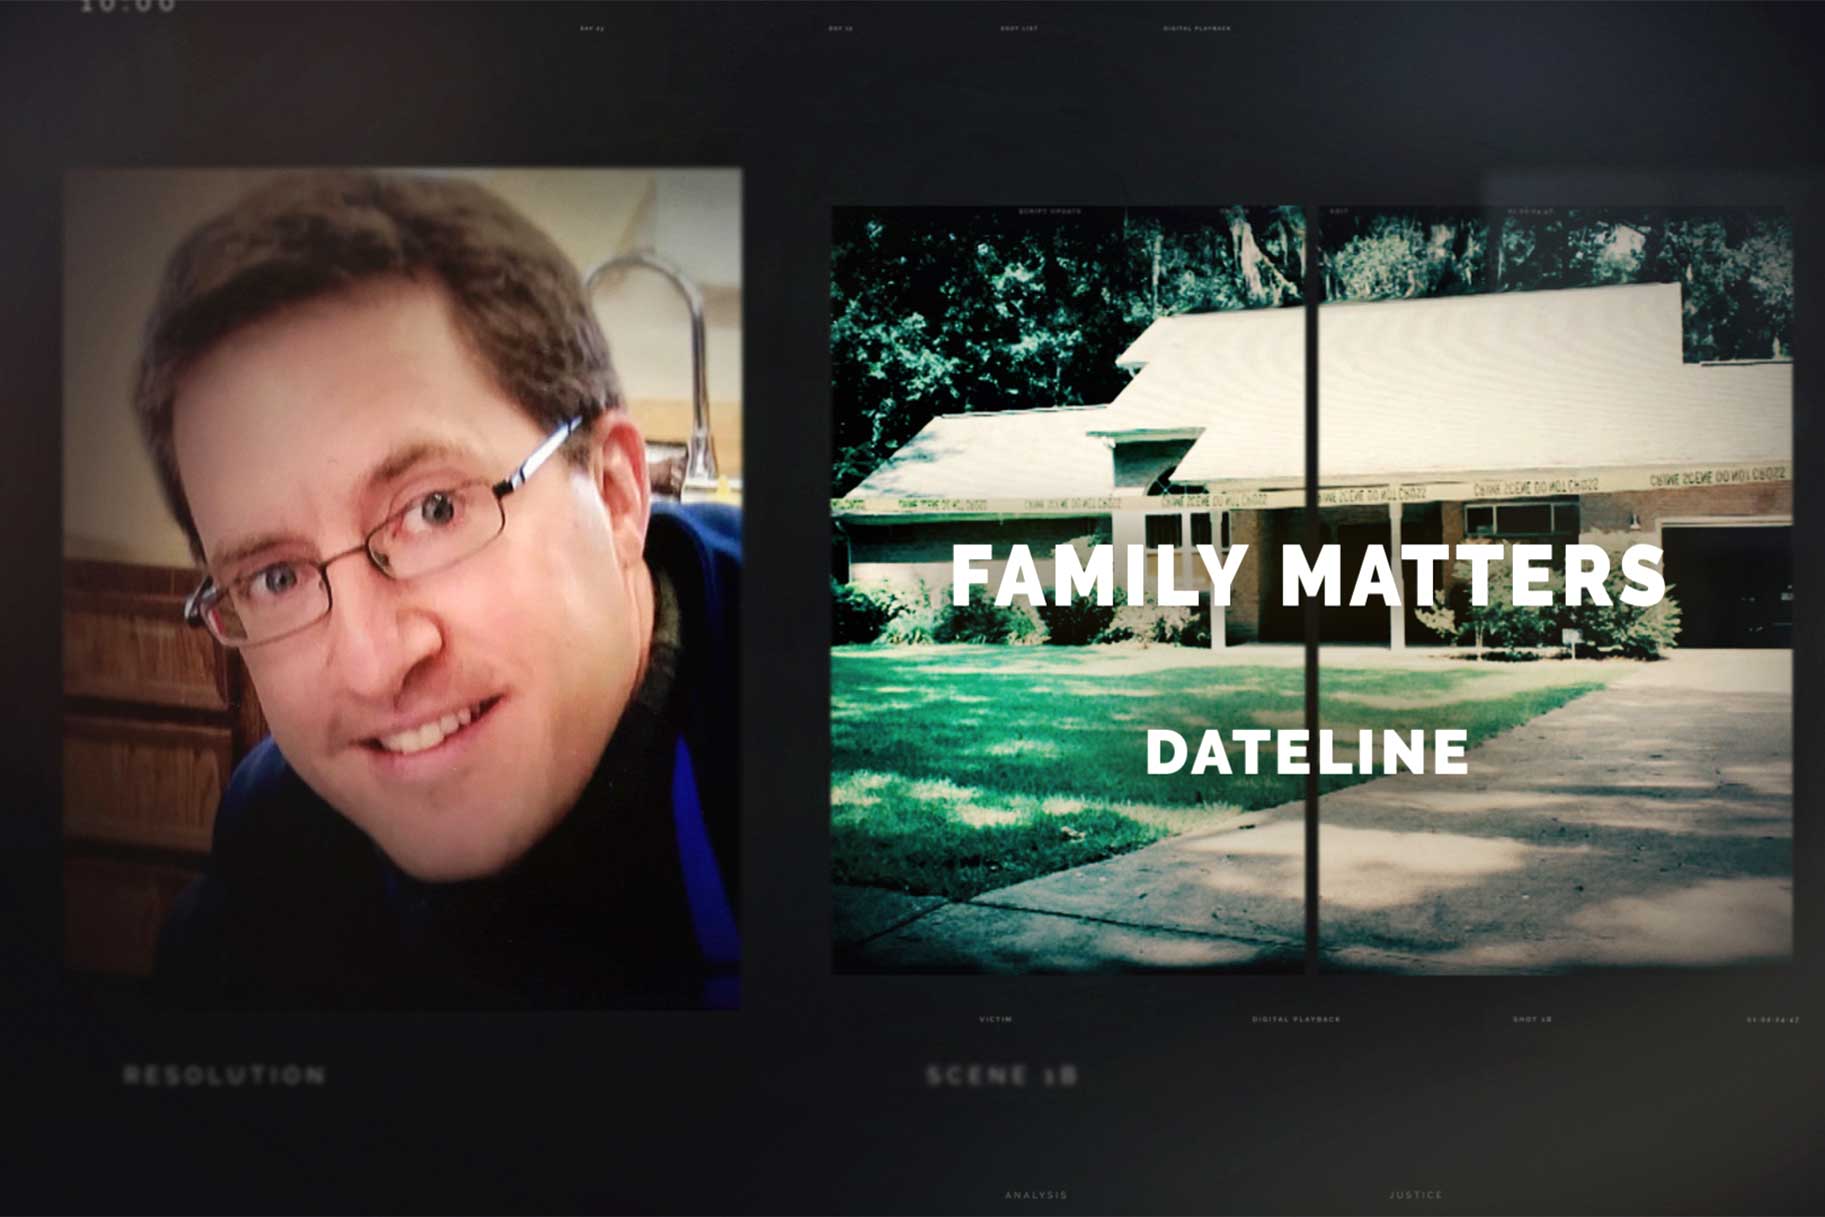 Dan Markel featured on Dateline